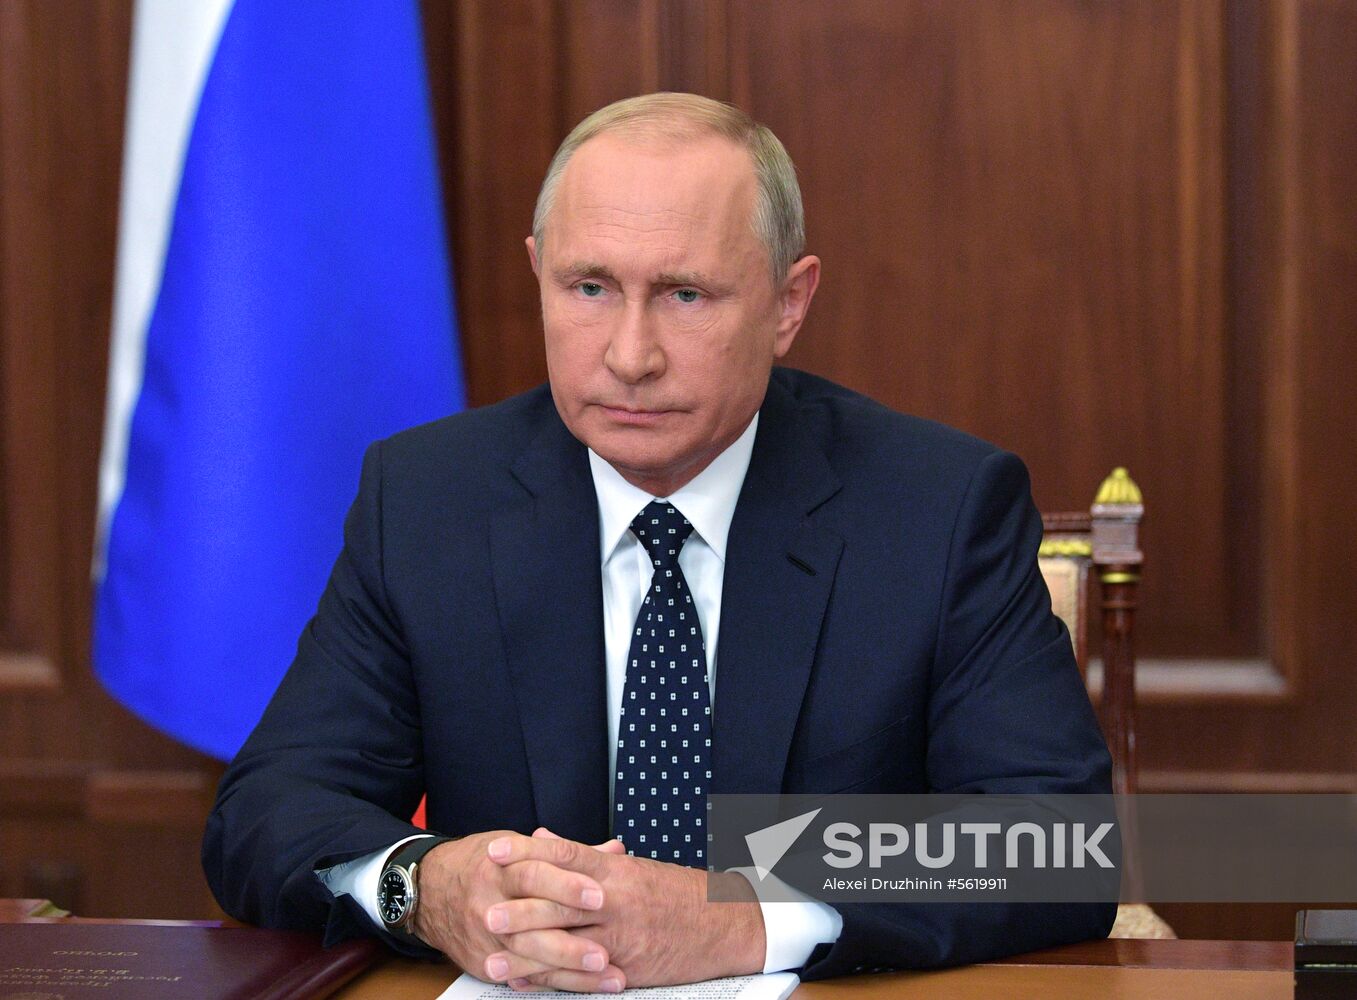 President Vladimir Putin addresses the nation